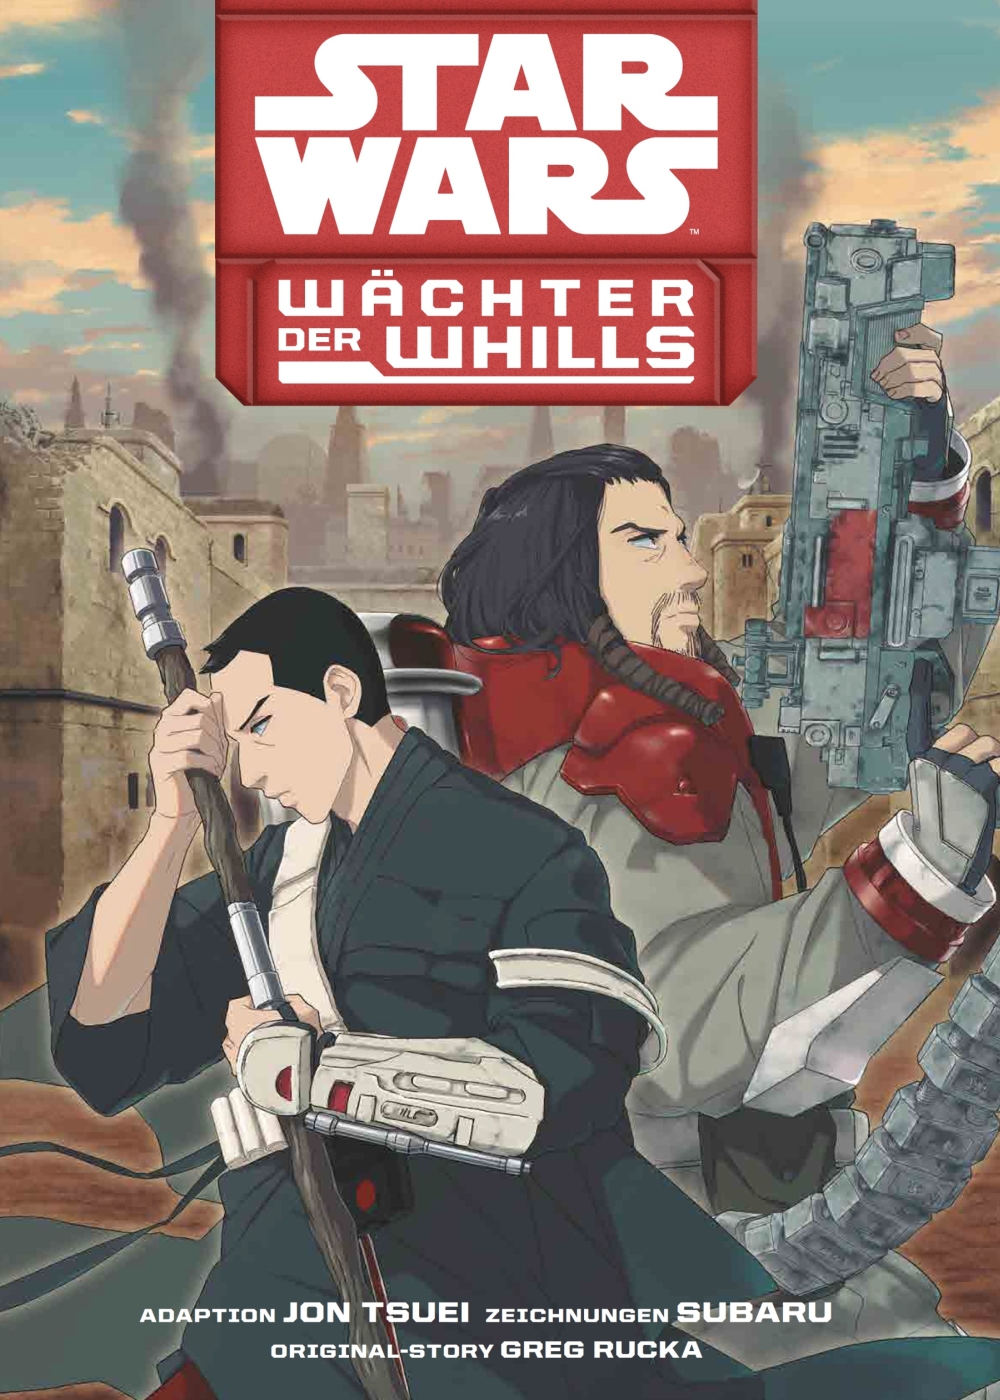 Star Wars - Wächter der Whills 1 Manga (New)